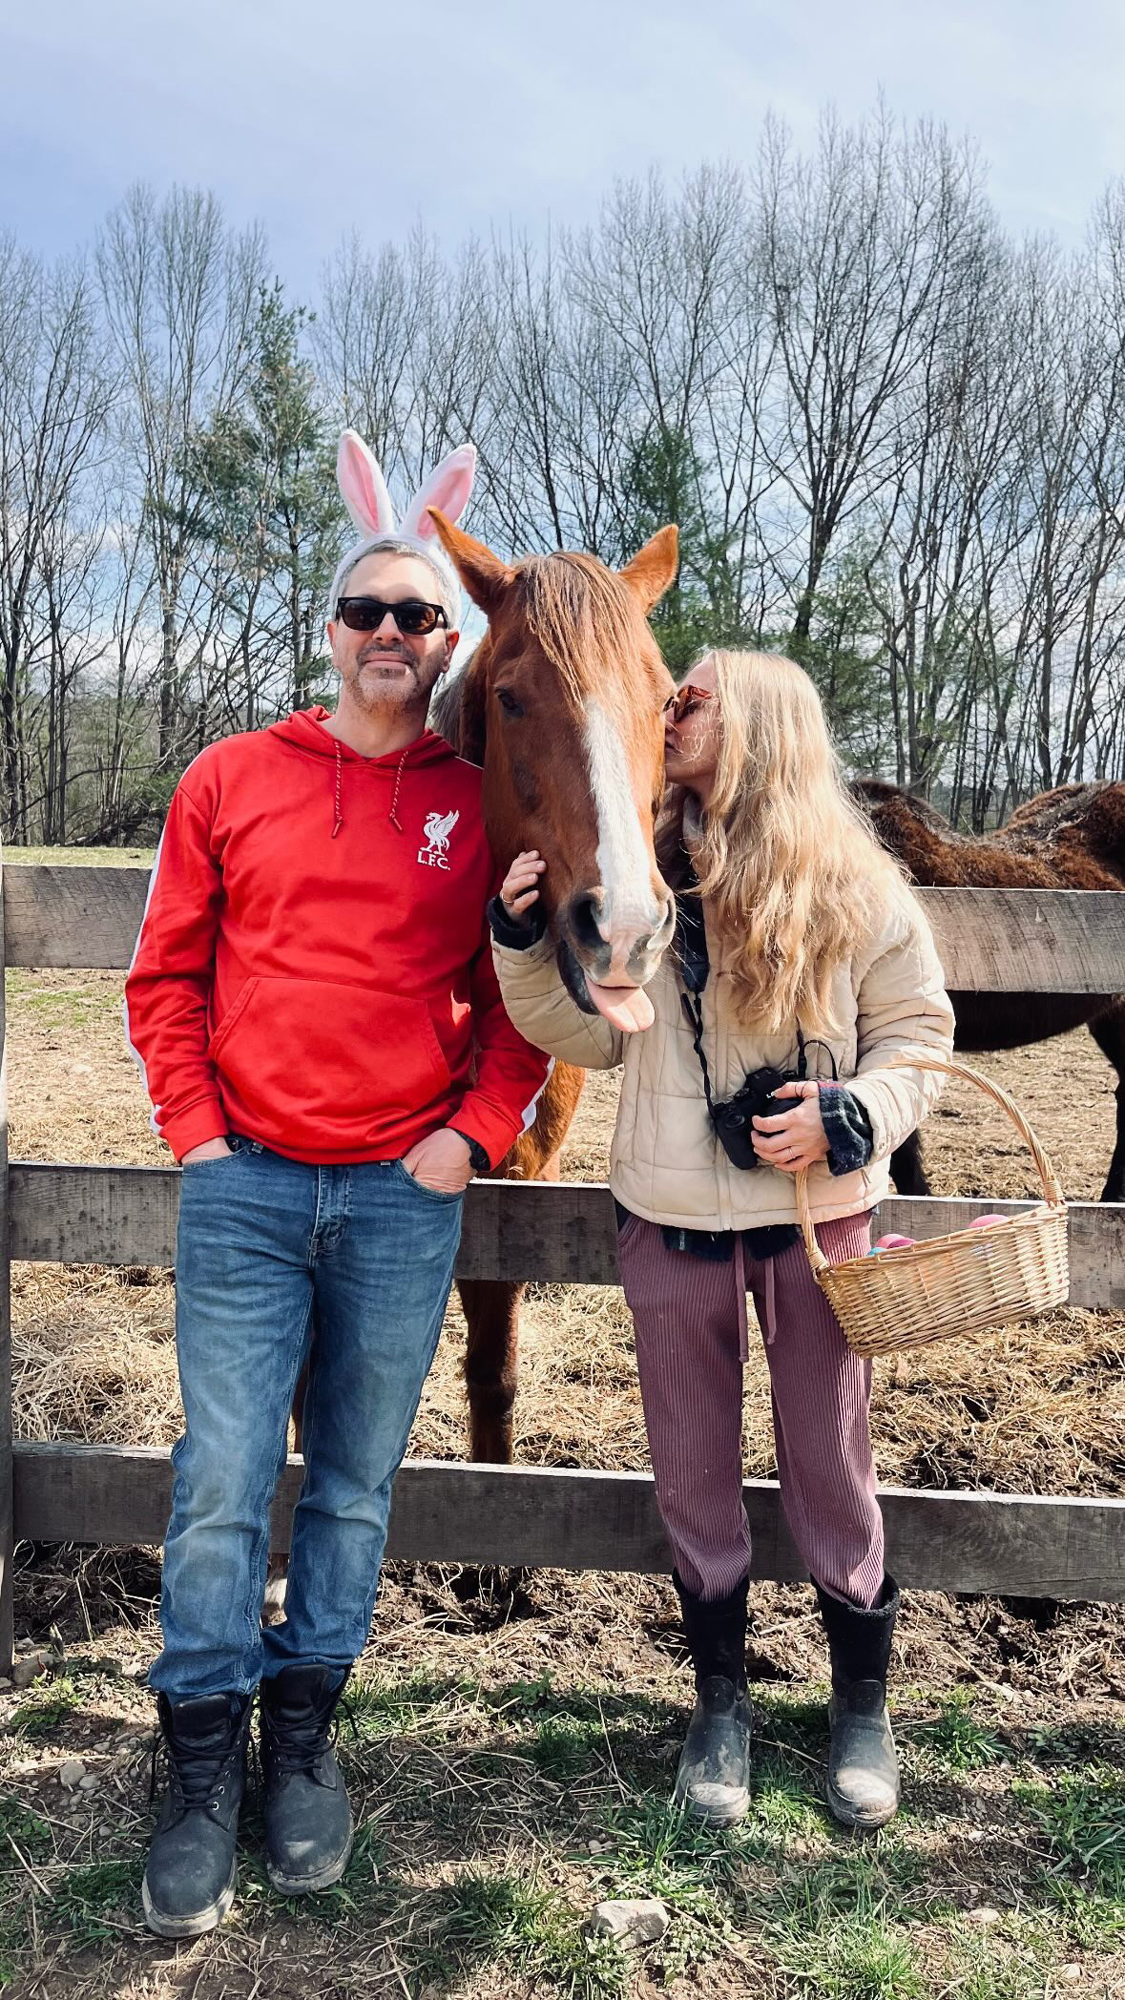 Amanda Seyfried and Husband Thomas Sadoski Celebrate Easter on Their Farm